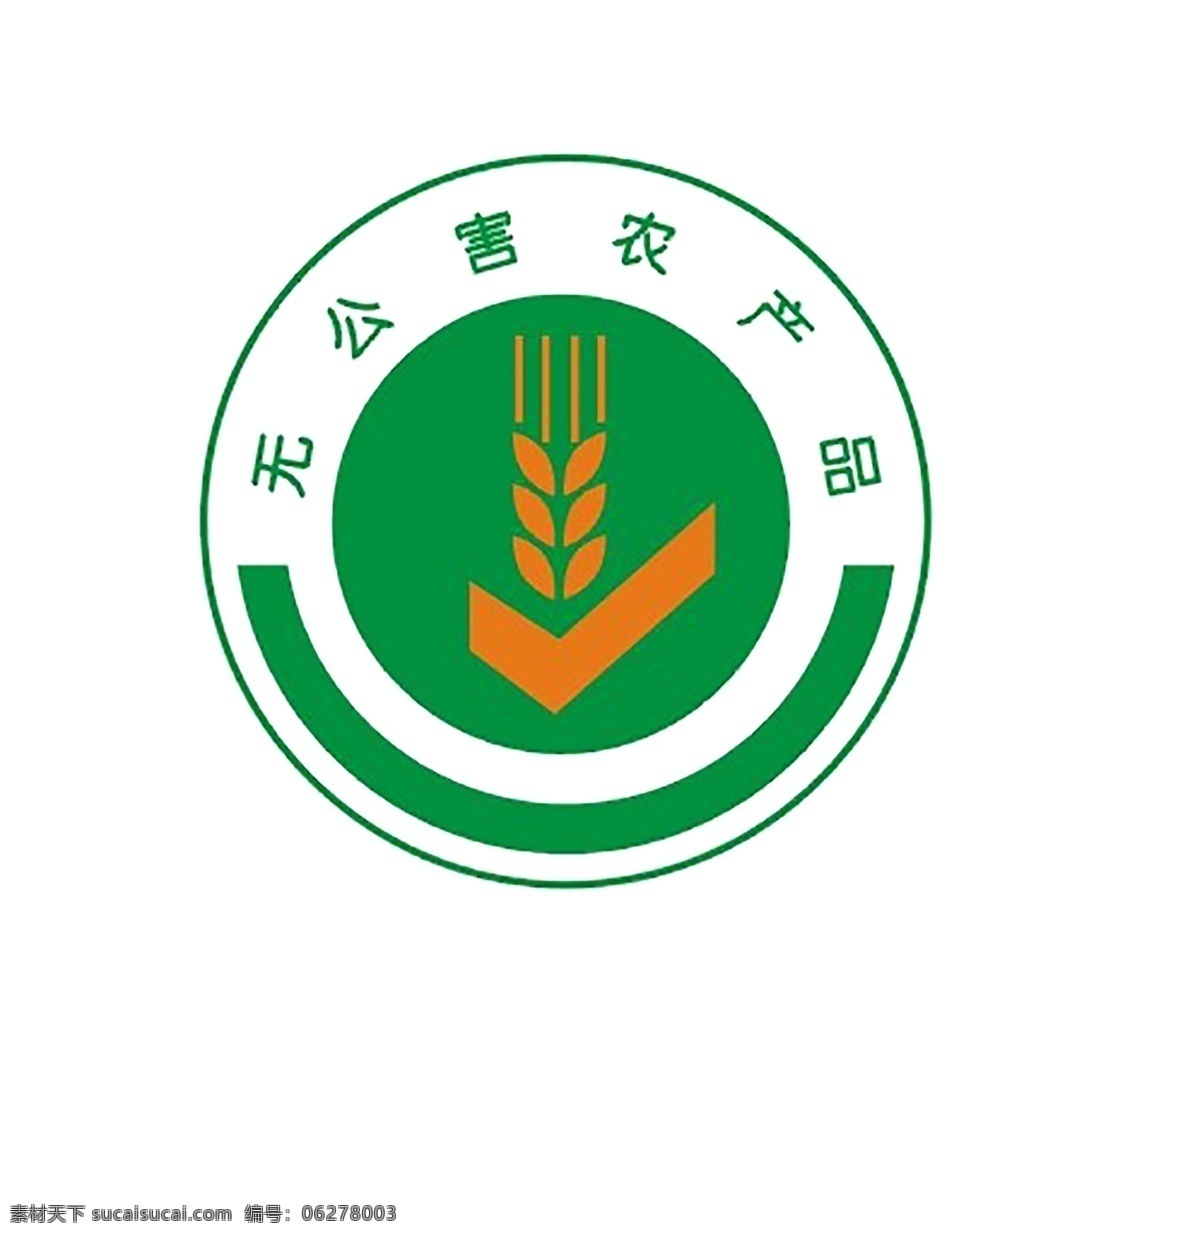 无公害 产品 logo 农业 产品设计 原稿 原创照片 白色